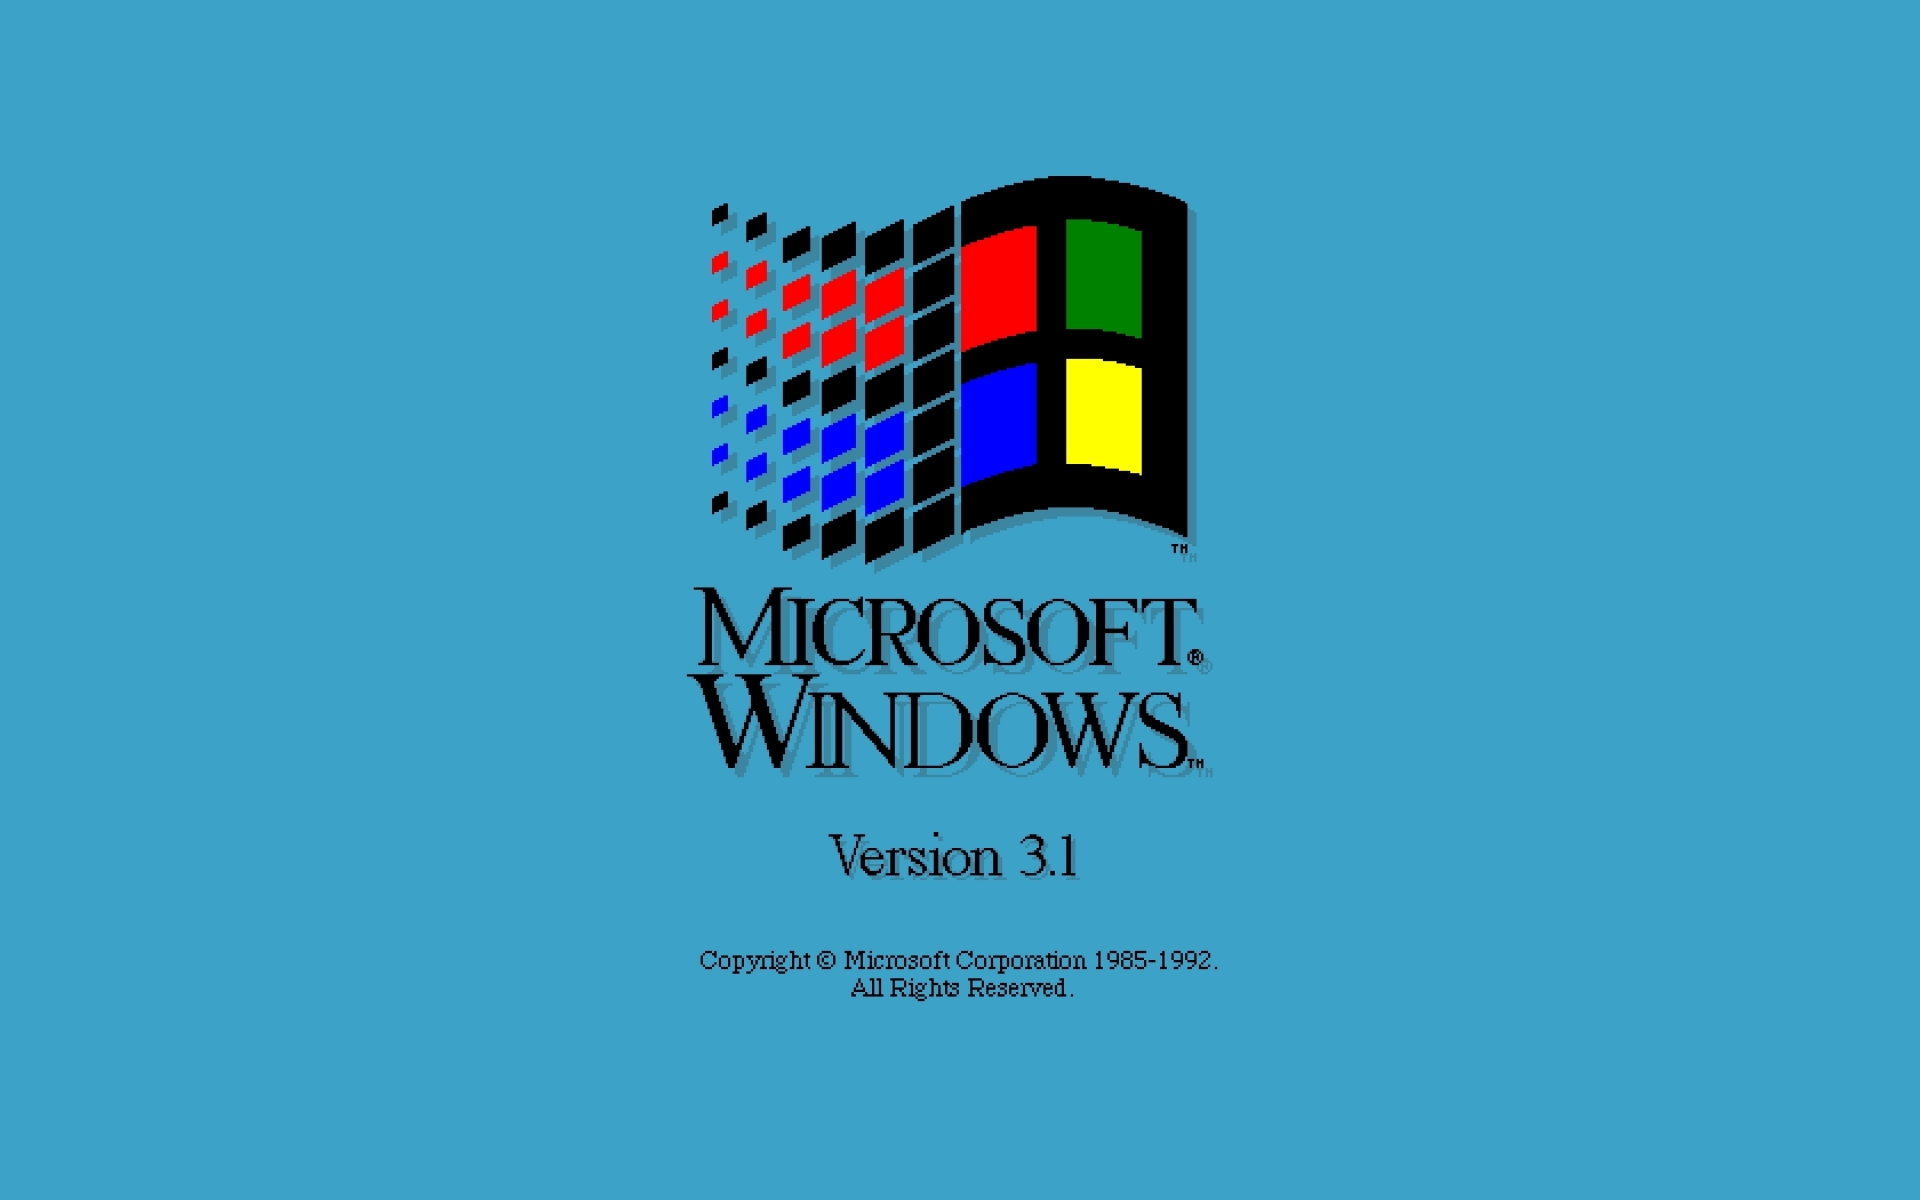 Những hình nền cũ của Windows (Old Windows Wallpaper) đã tạo nên một số kỷ niệm đáng nhớ cho nhiều người. Hãy xem hình ảnh liên quan để khám phá những mảnh ghép ký ức của bạn trong cuộc đời công nghệ.